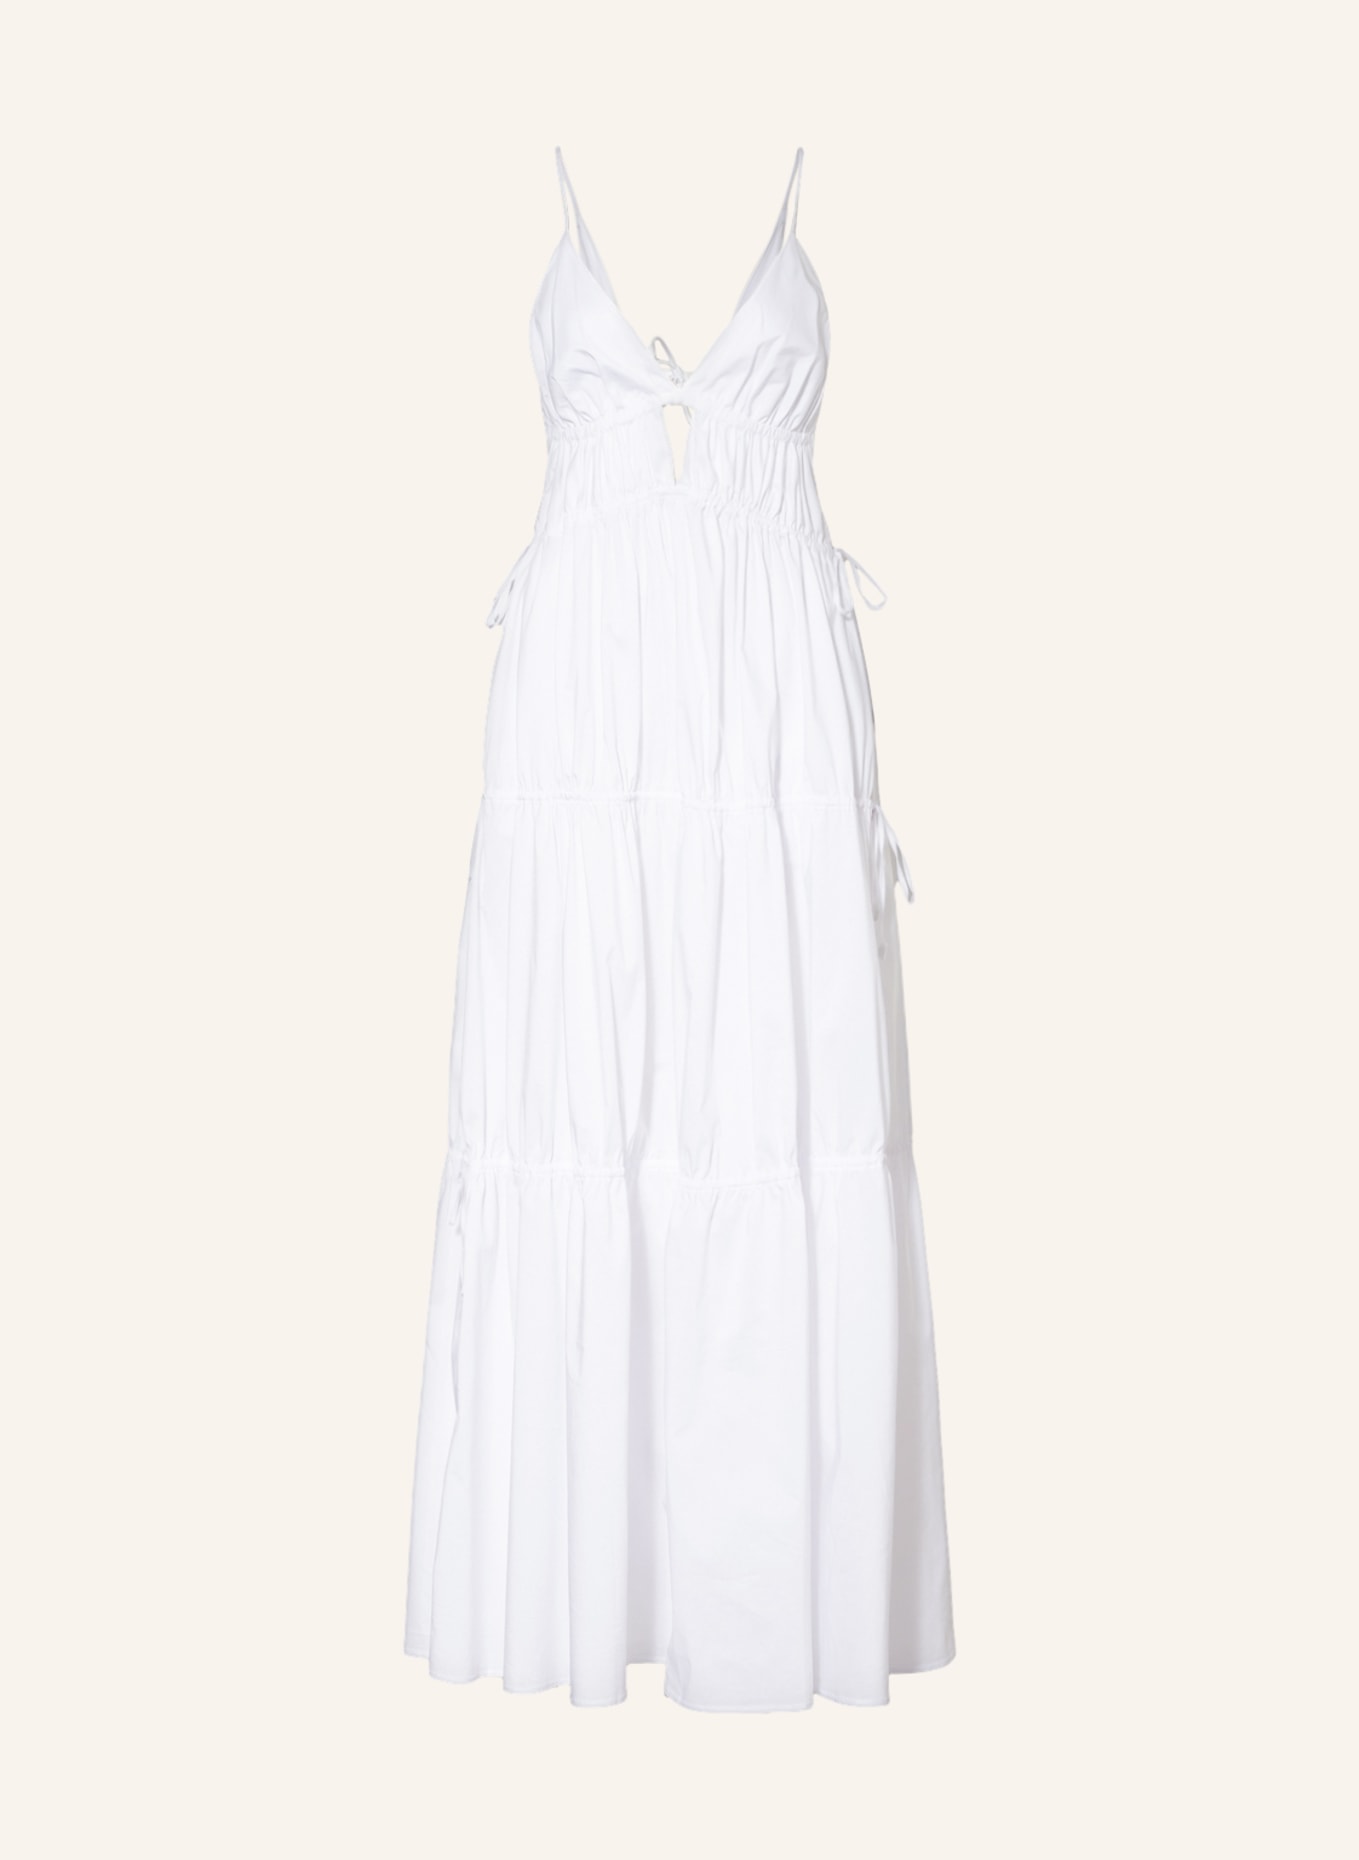 SIMKHAI Dress APRIL with cut-out, Color: WHITE (Image 1)